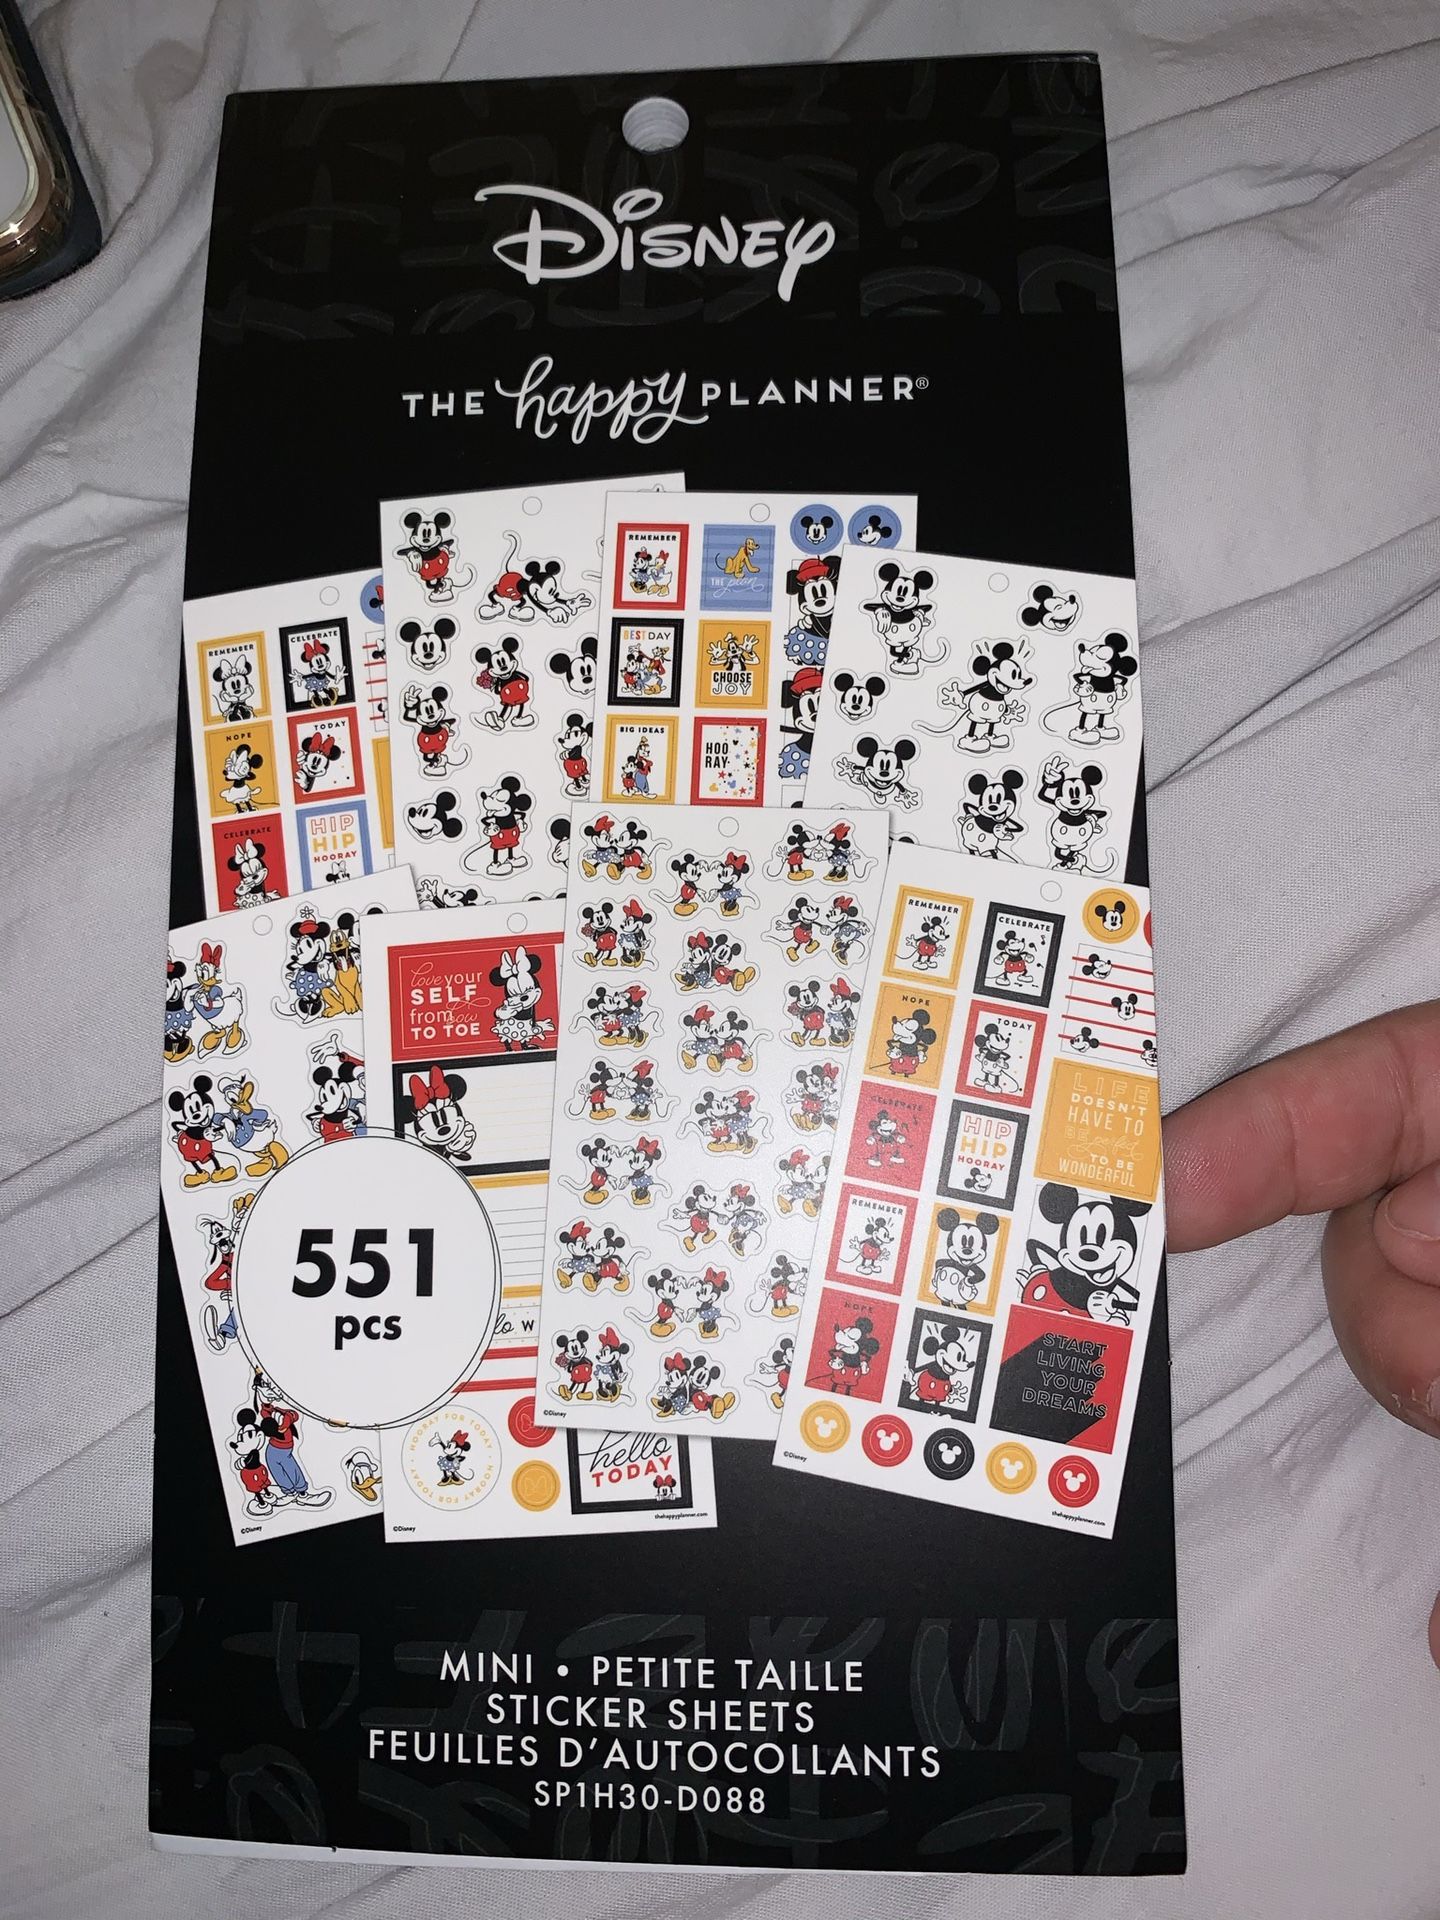 The Happy Planner Disney sticker book